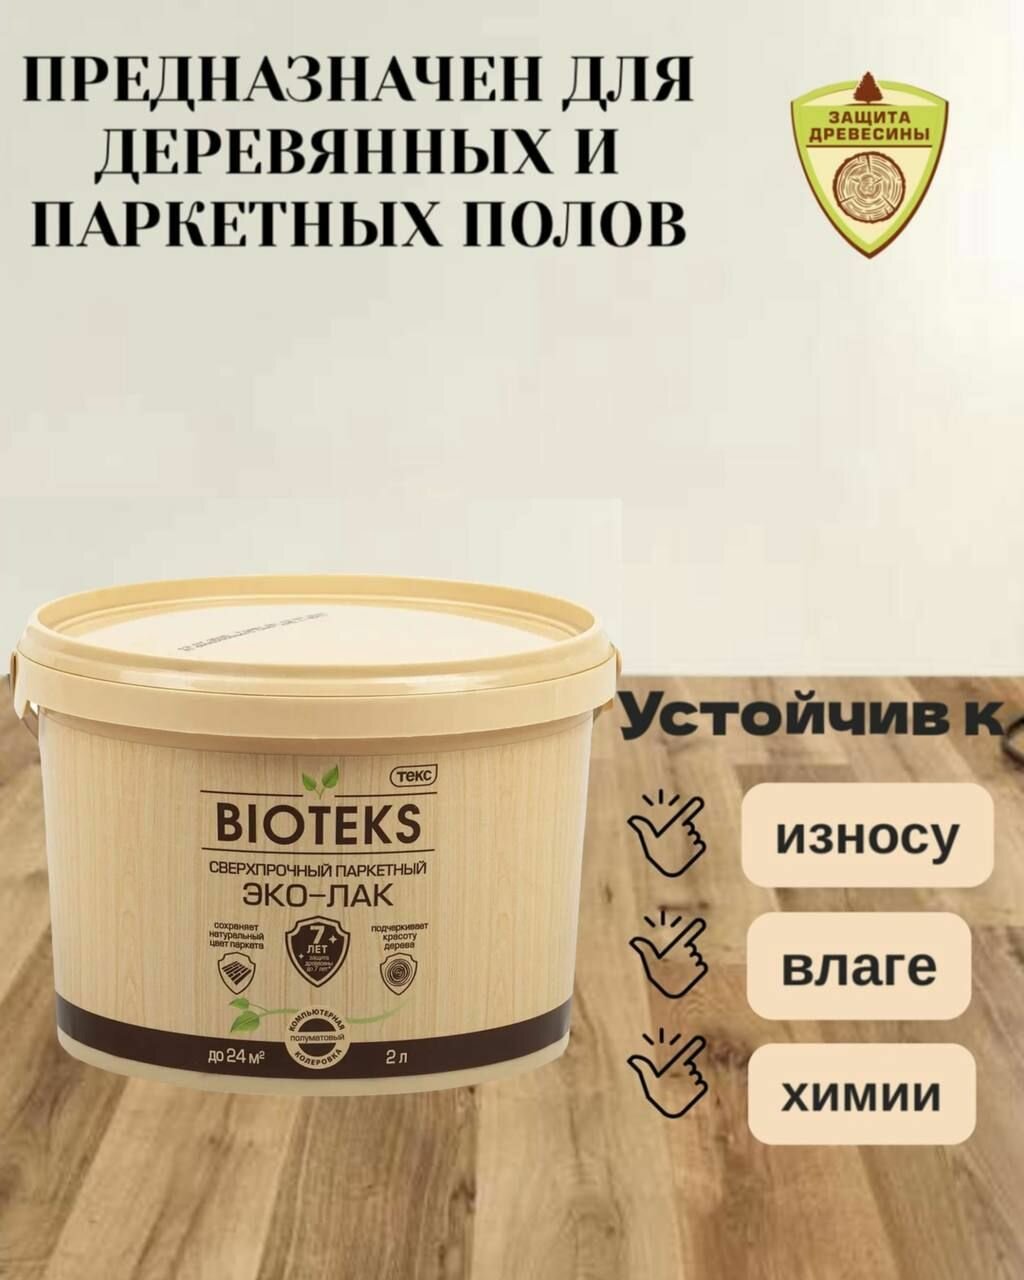 Паркетный сверхпрочный ЭКО-ЛАК Bioteks глянцевый 2л